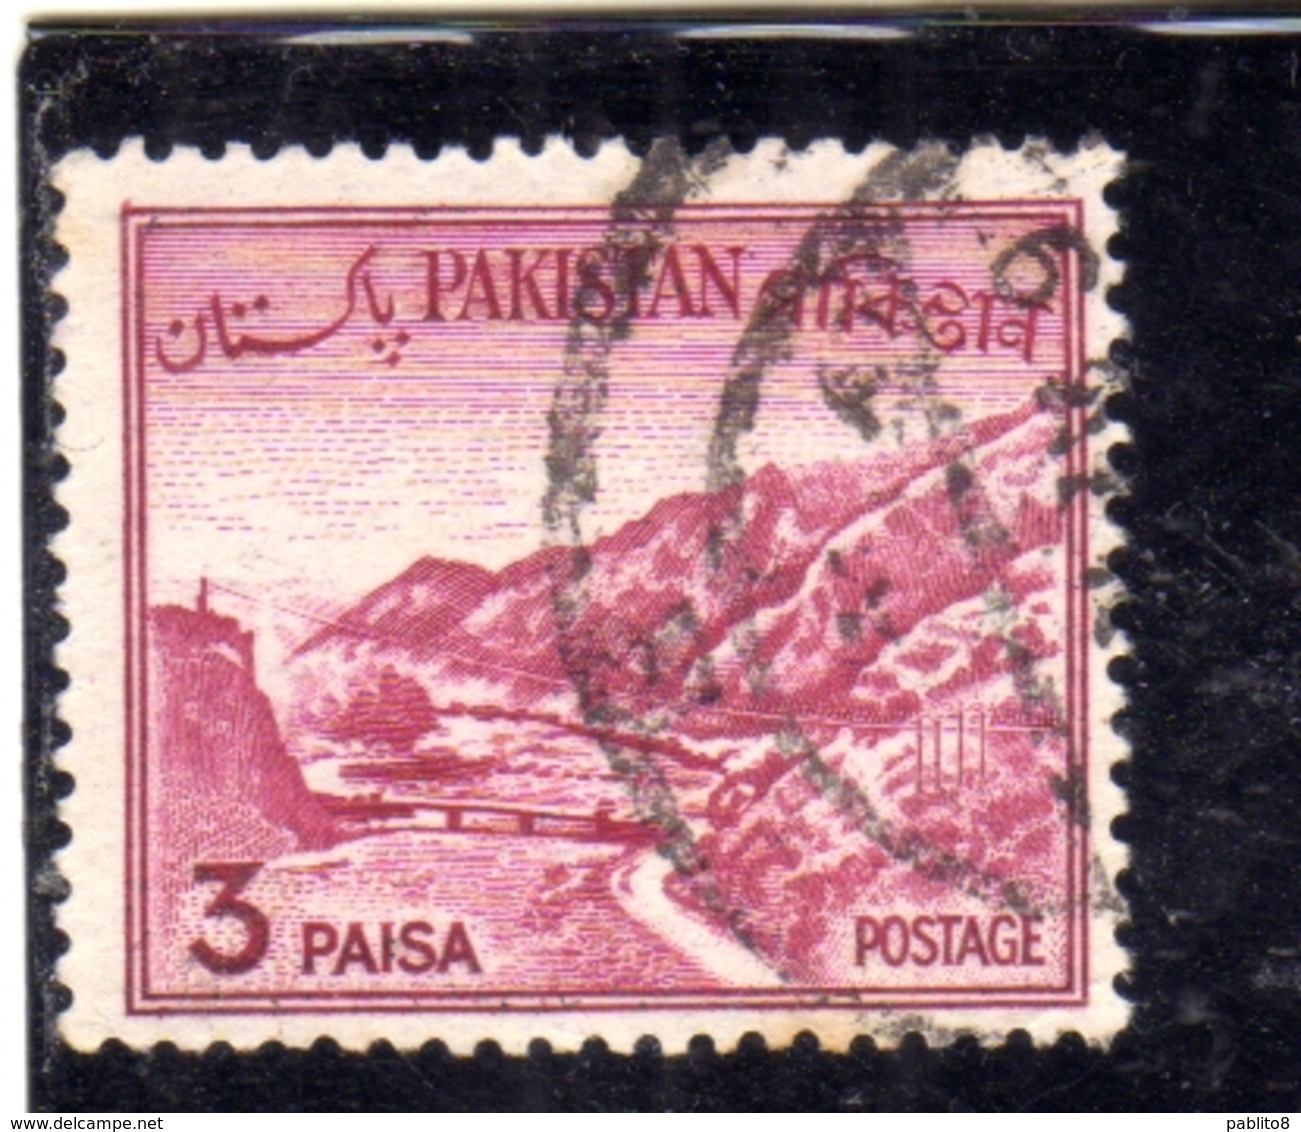 PAKISTAN 1961 1963 LANDSCAPE KHYBER PASS 3p USED USATO OBLITERE - Pakistan